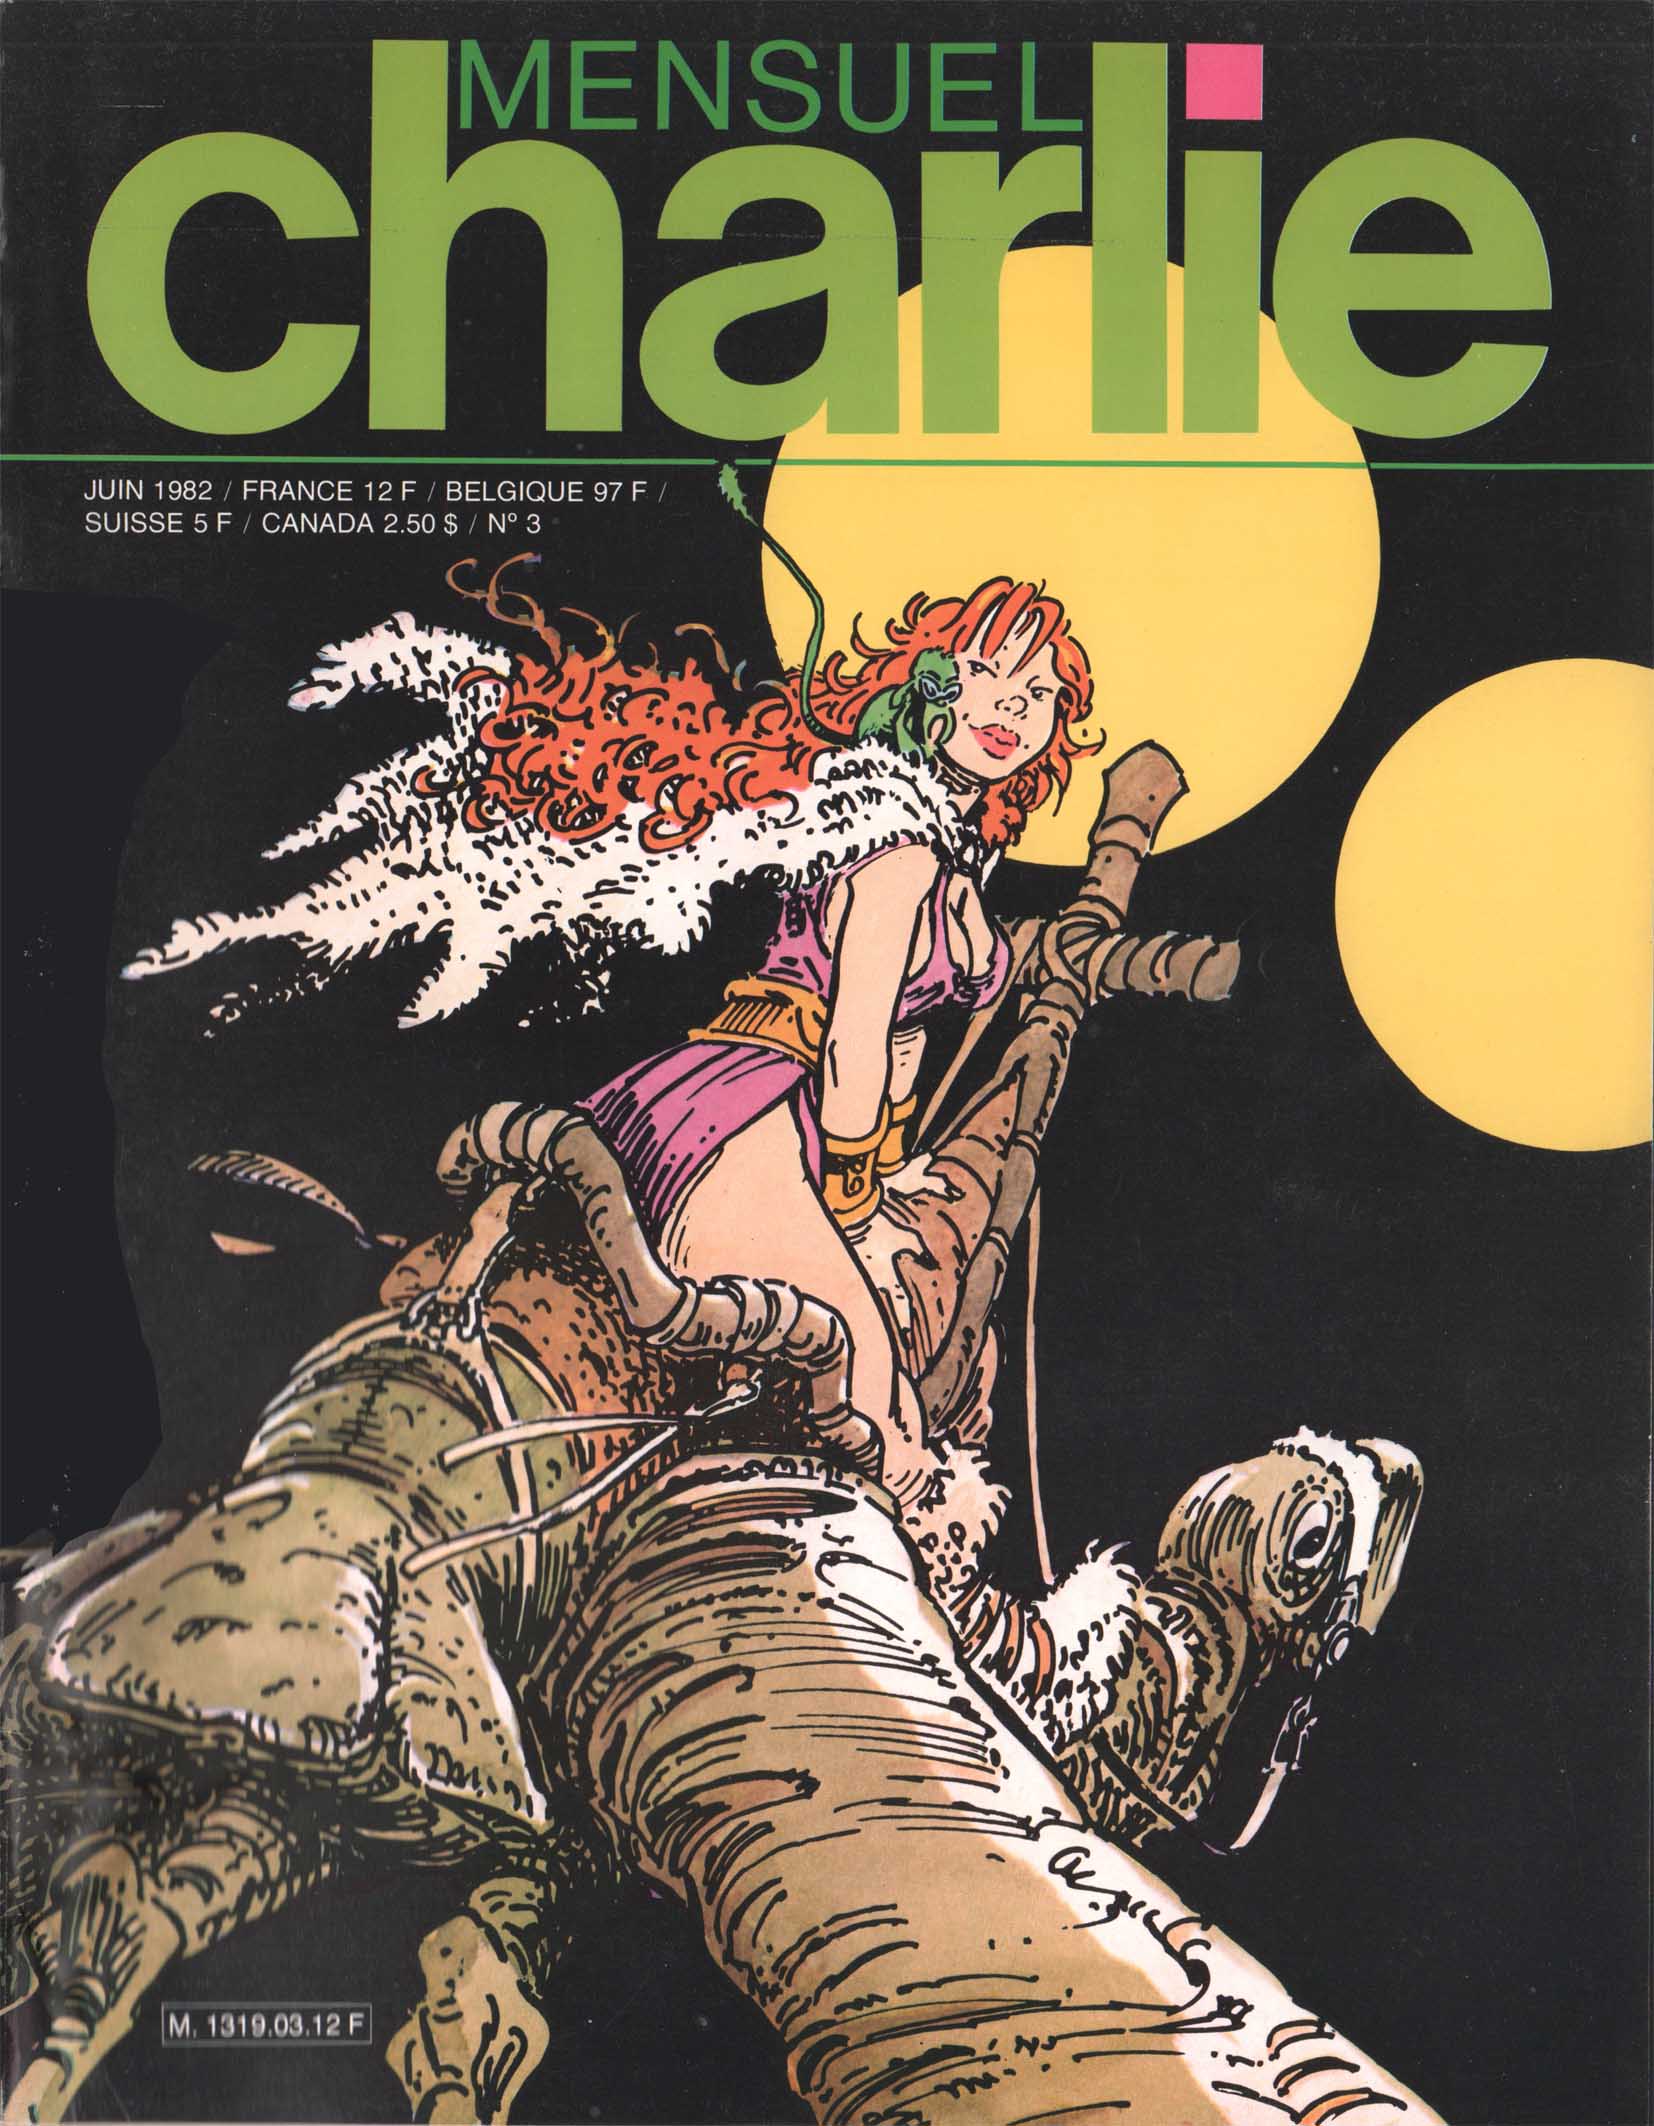 Couverture de Charlie mensuel n° 3 (juin 1982).